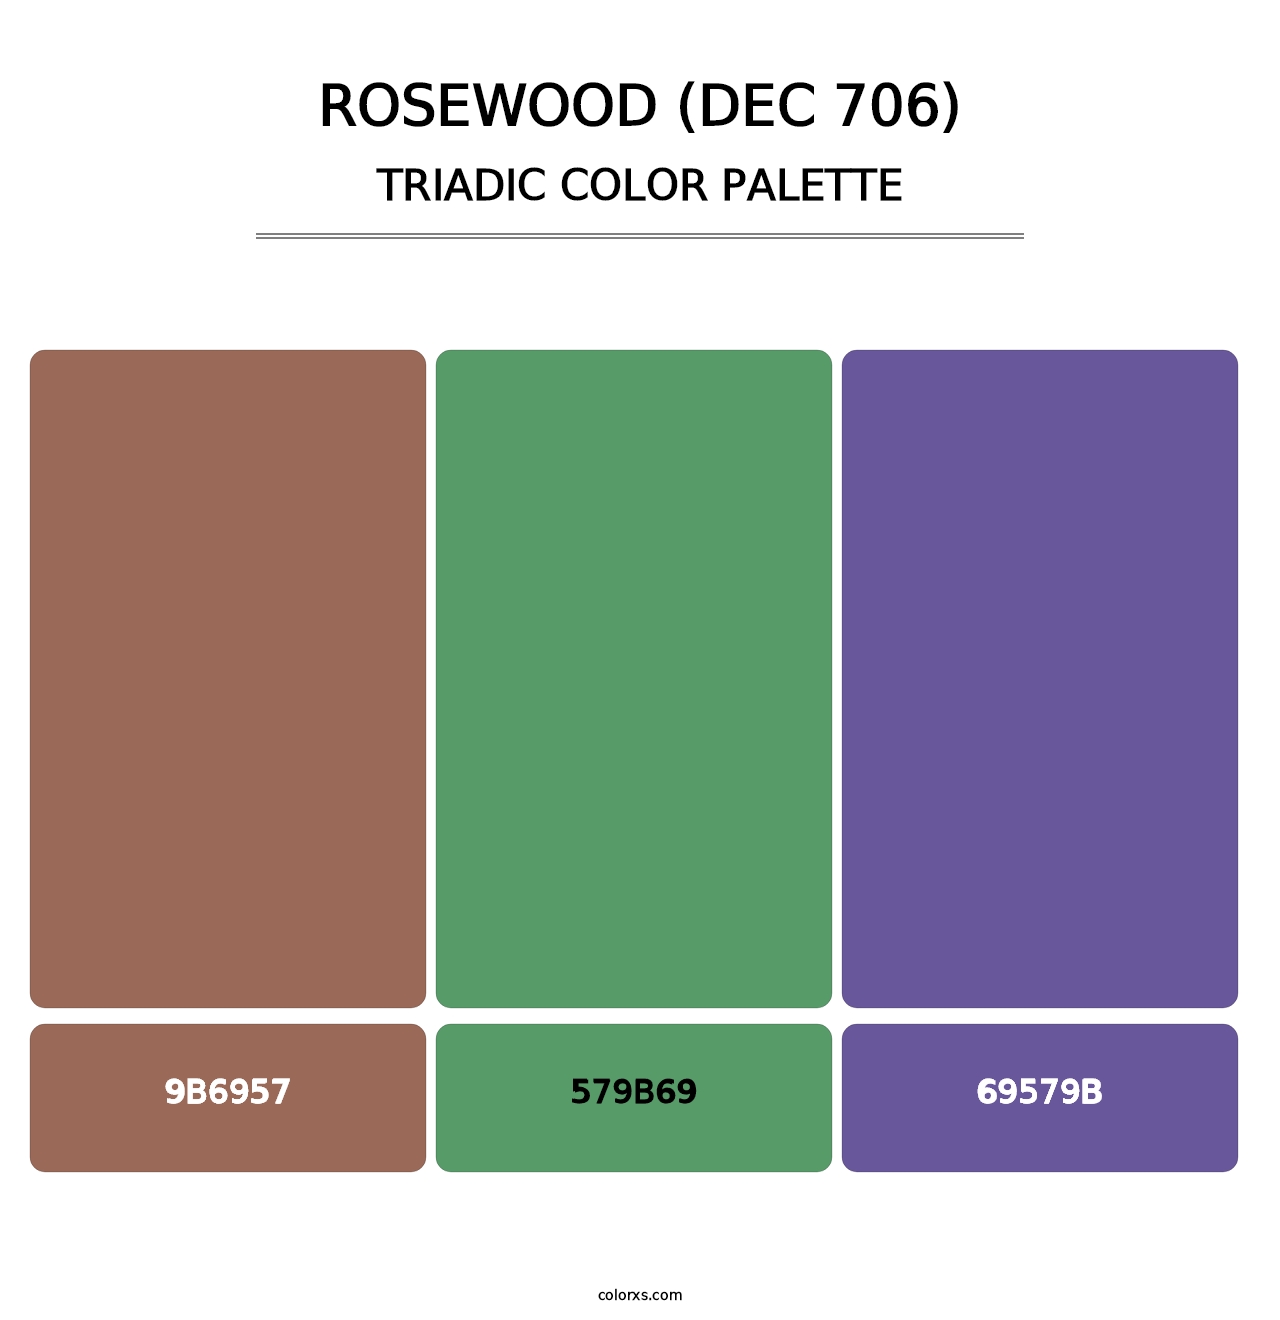 Rosewood (DEC 706) - Triadic Color Palette